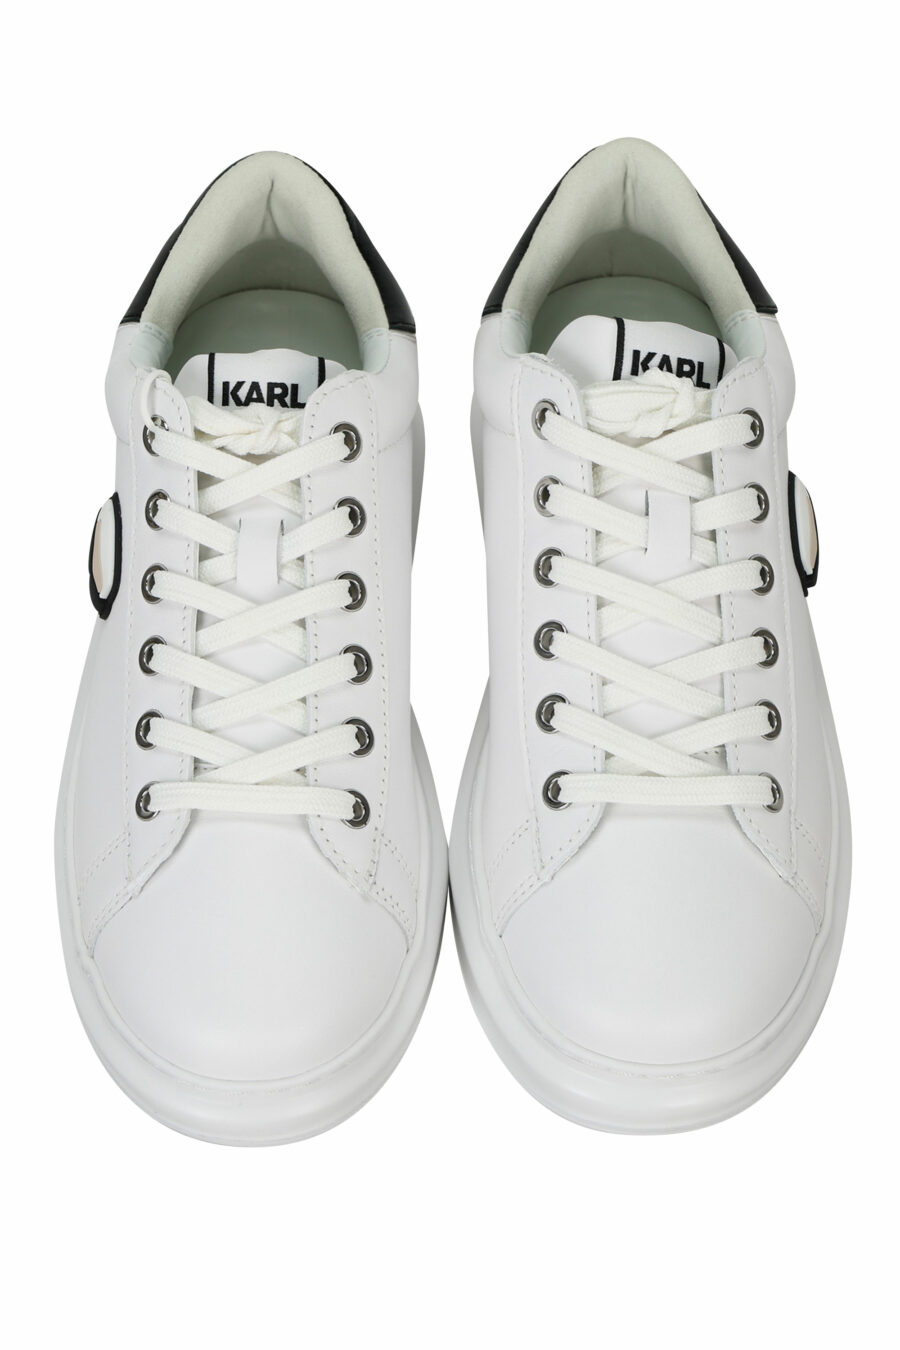 Zapatillas blancas "Kapri" con logo en goma y detalle negro - 5059529351020 4